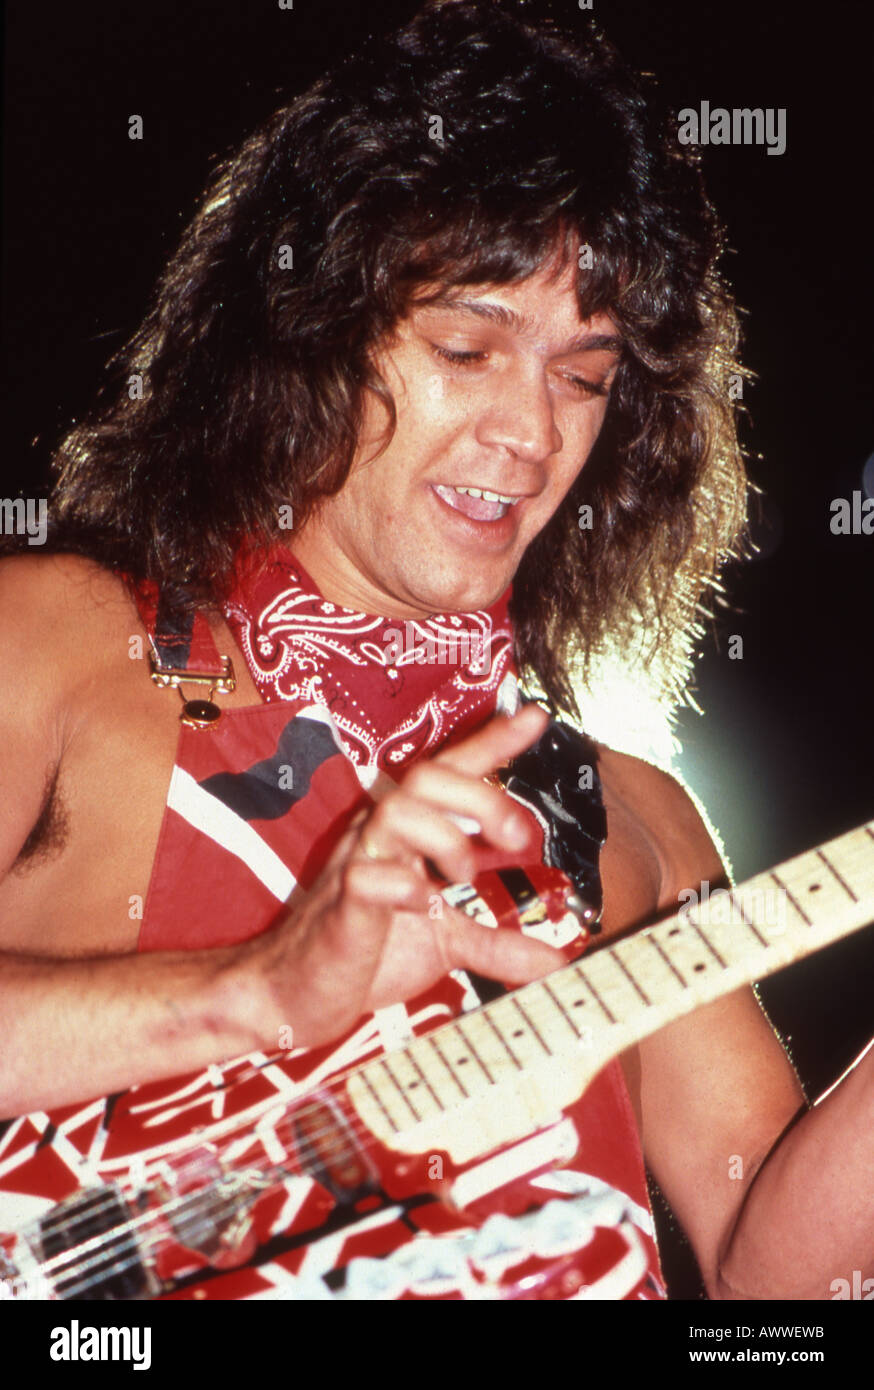 EDDIE VAN HALEN US rock musician in 1983 Stock Photo